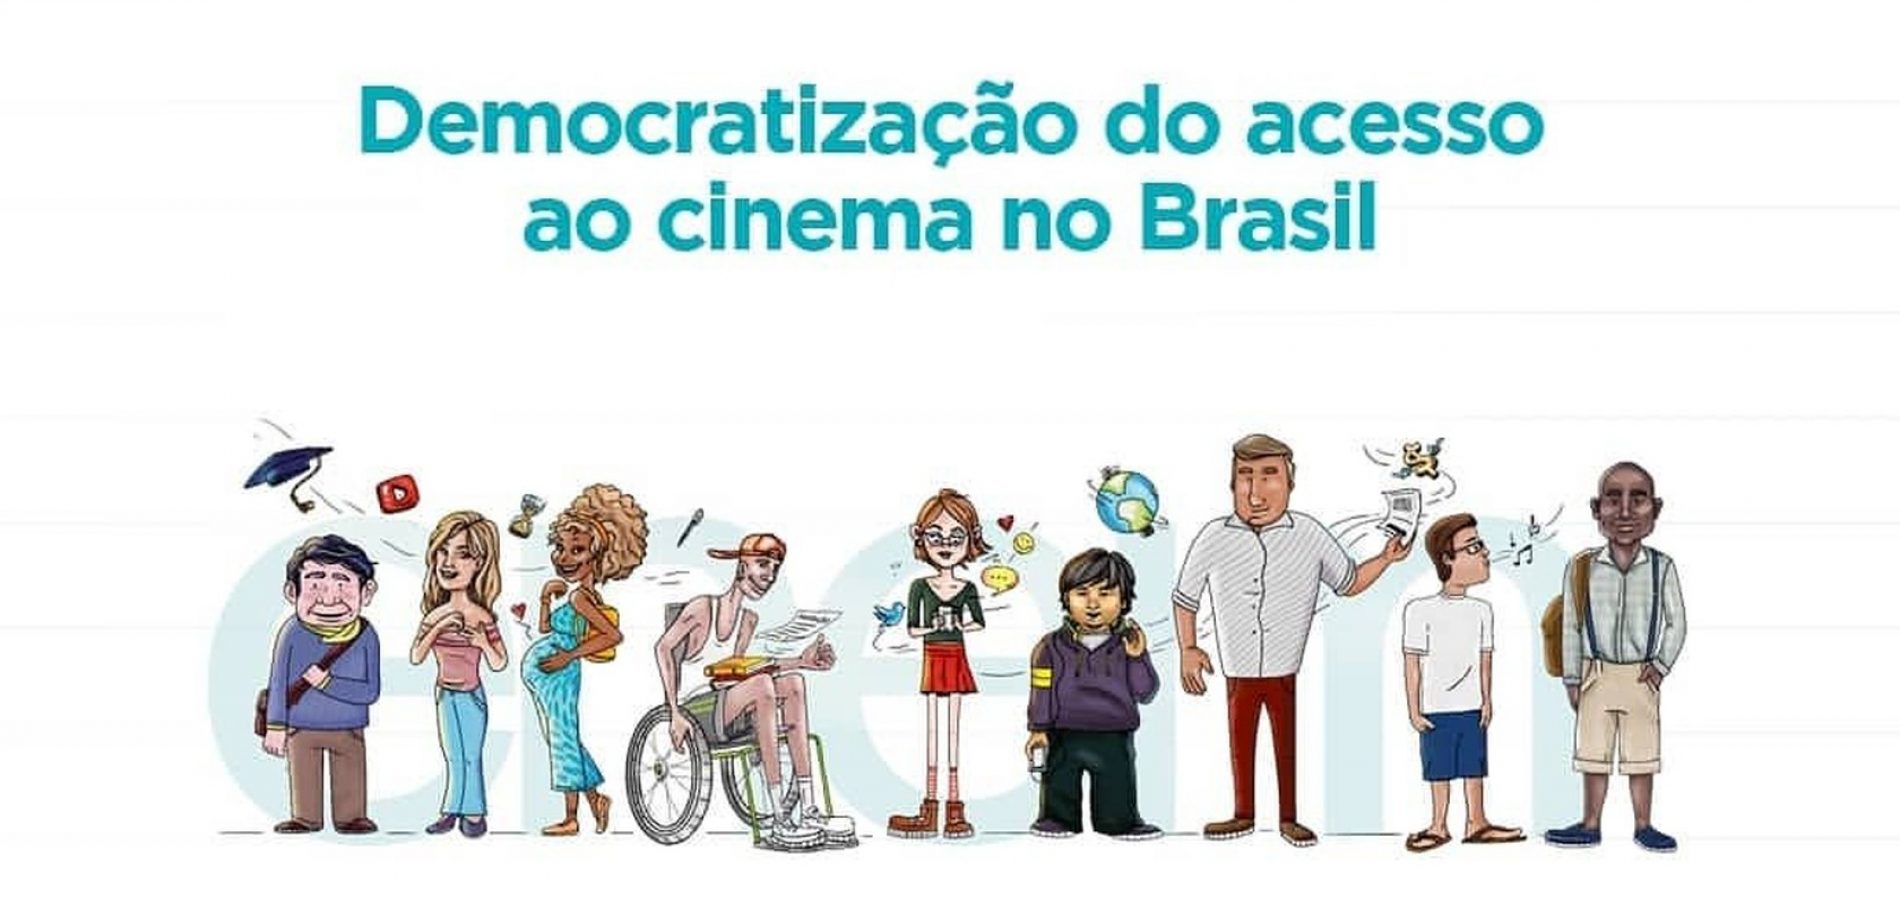 Resultado de imagem para DEMOCRATIZAÇÃO DO ACESSO AO CINEMA NO BRASIL FOI TEMA DA REDAÇÃO DO ENEM 2019"